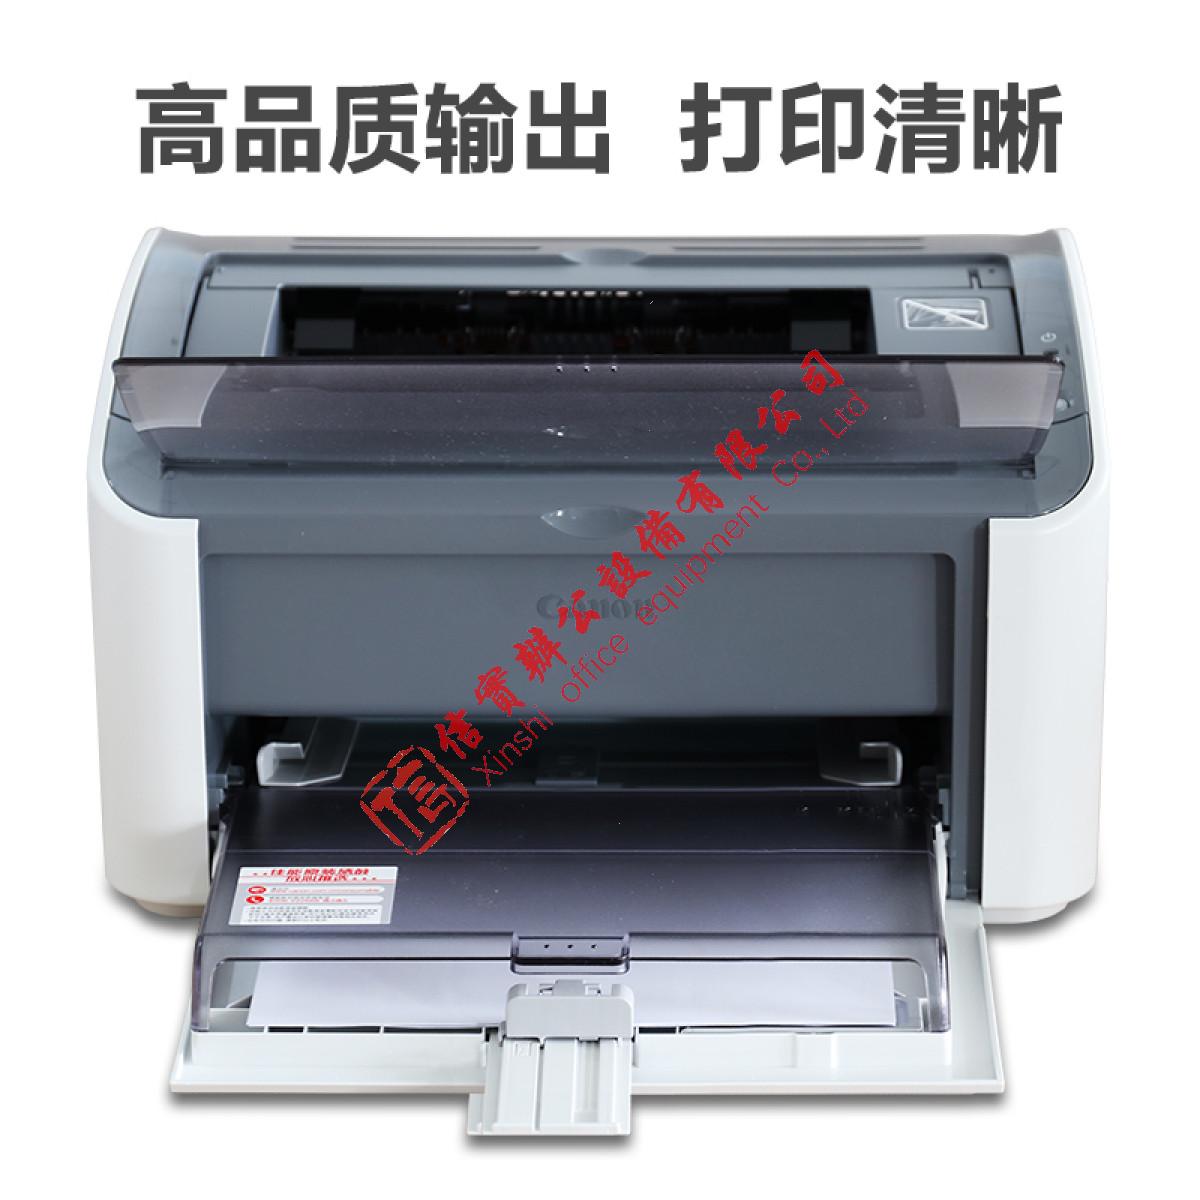 激光打印机 佳能/CANON LBP2900+ 黑白 A4